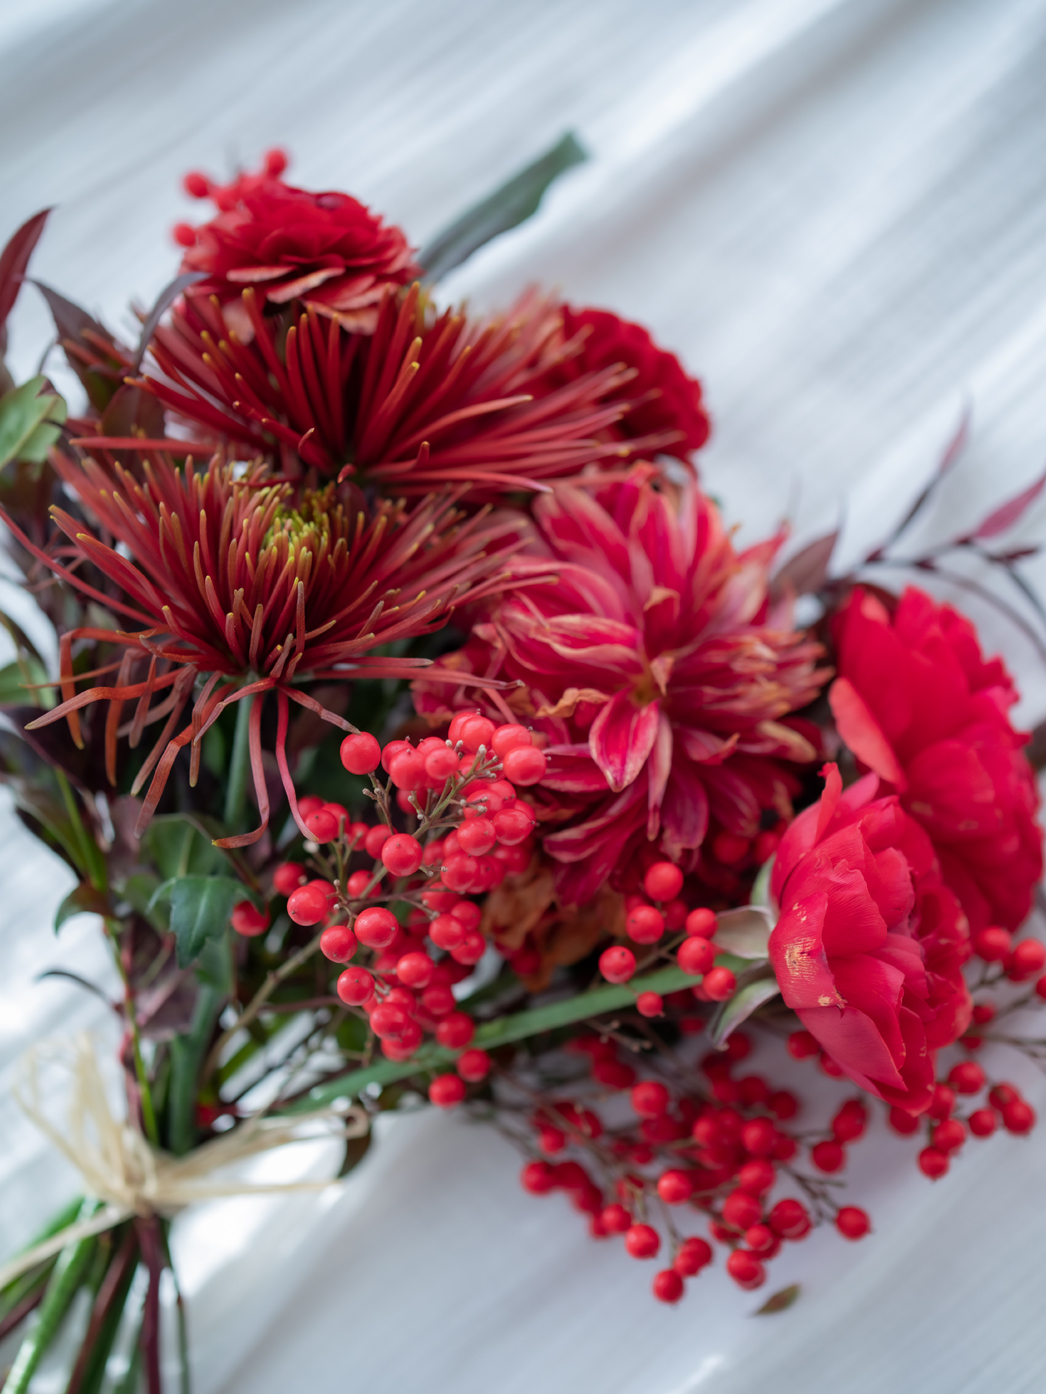 厄除けや火災除けに。お正月に飾りたい赤い花、ナンテン。